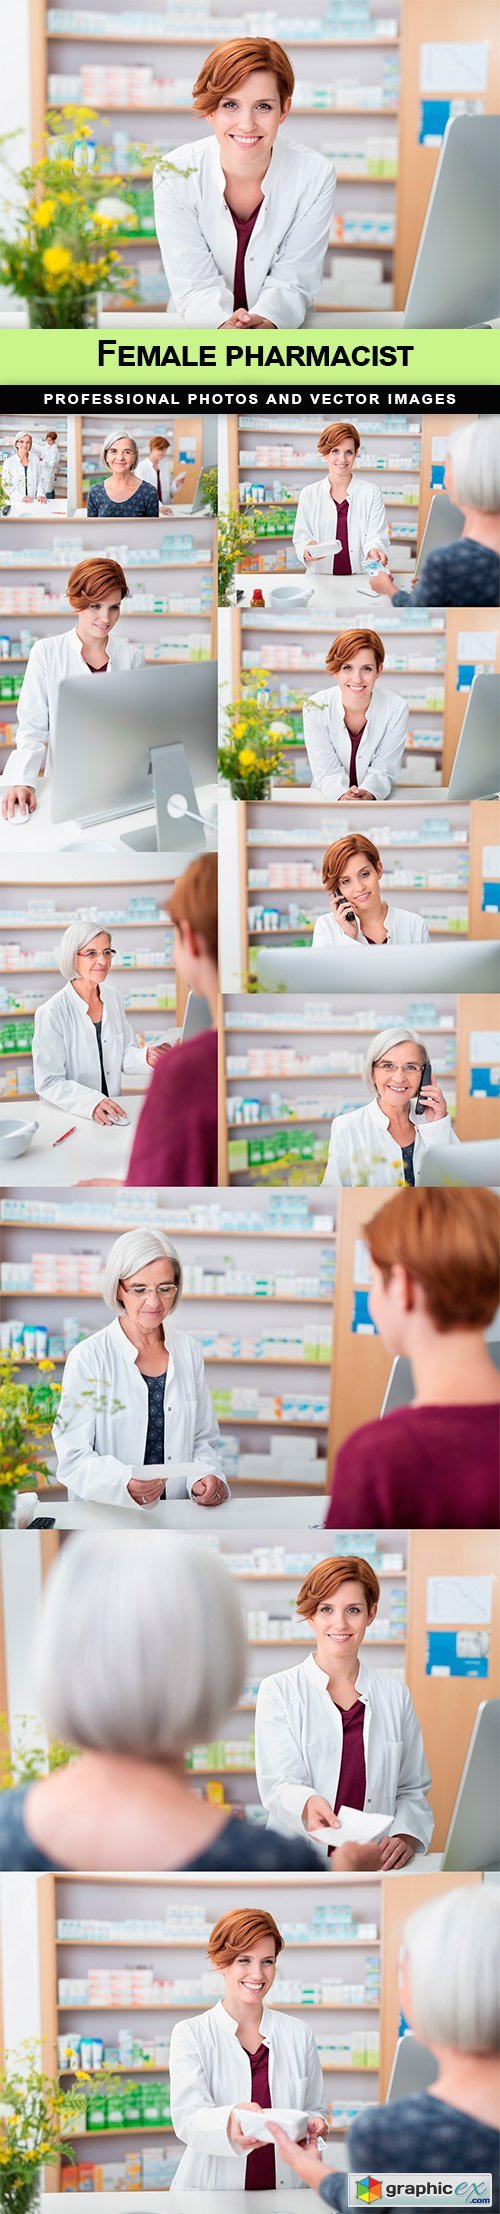 Female pharmacist - 11 EPS